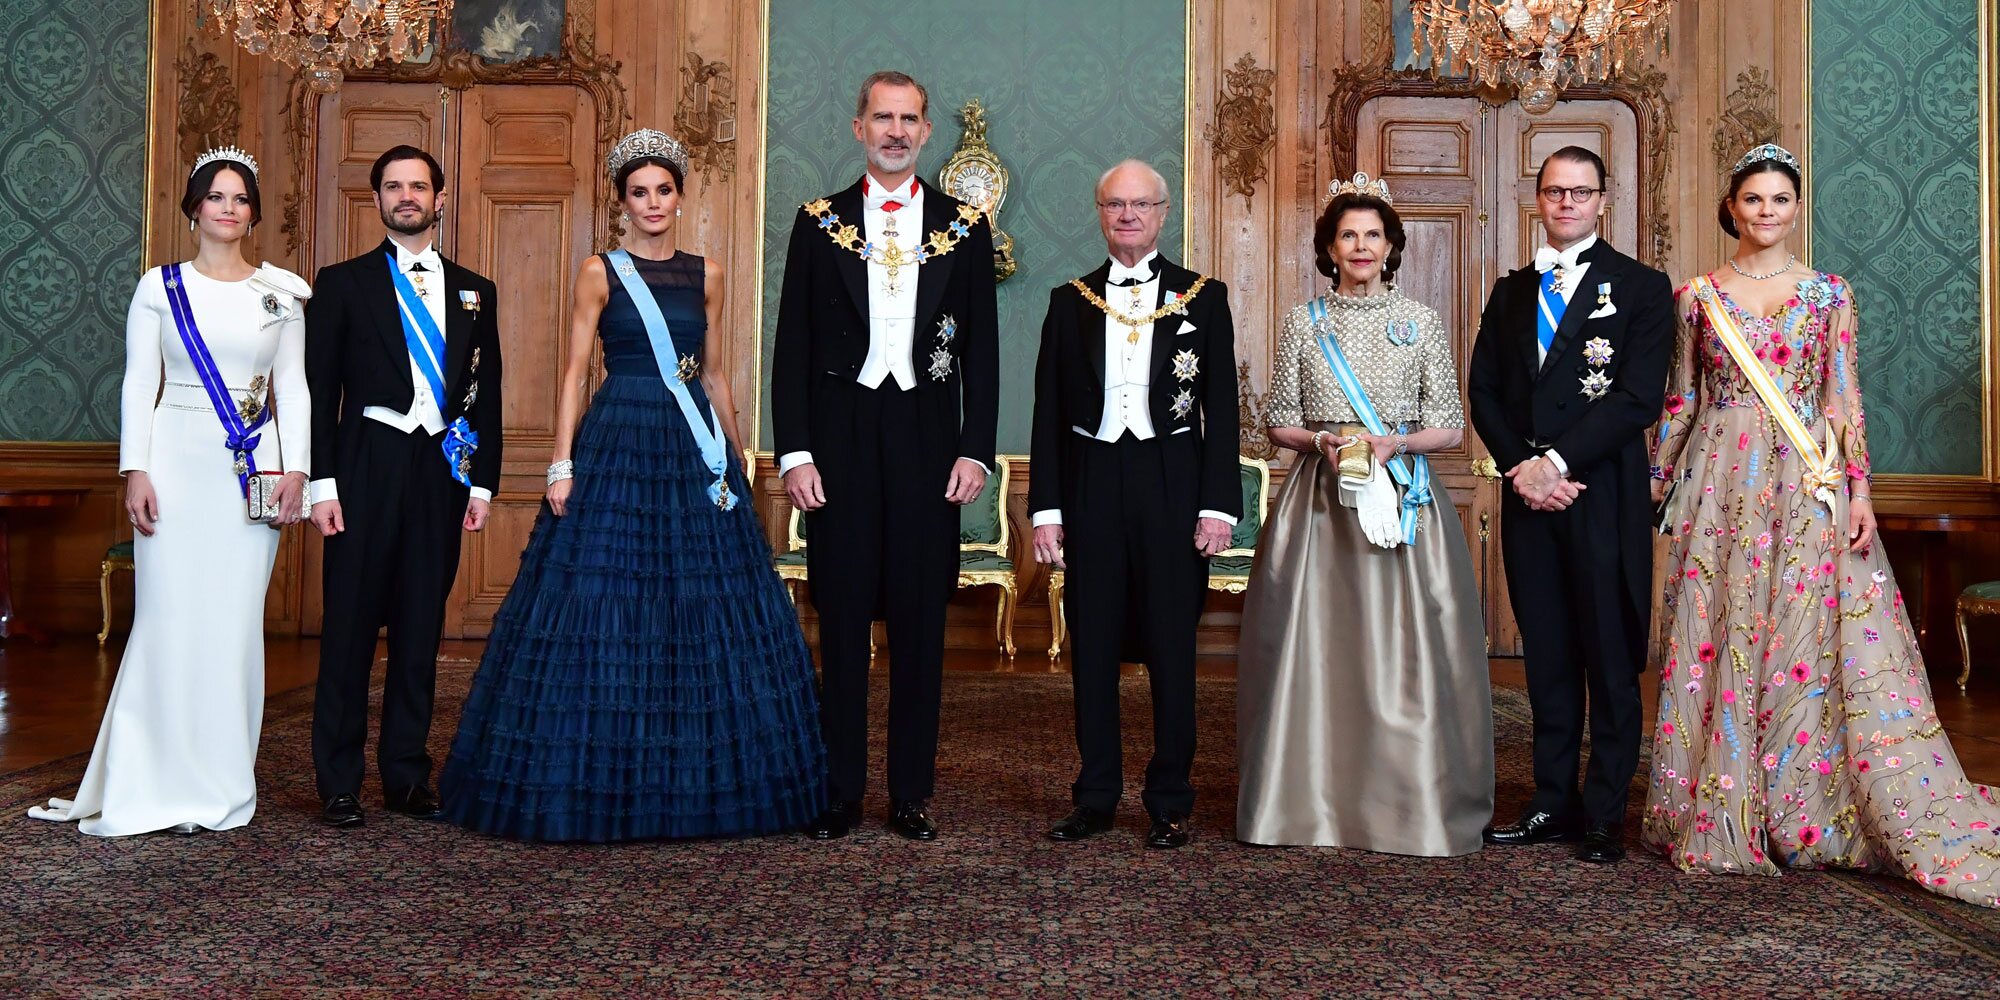 Lo que la Visita de Estado a Suecia ha mostrado de la relación de los Reyes Felipe y Letizia y la Familia Real Sueca